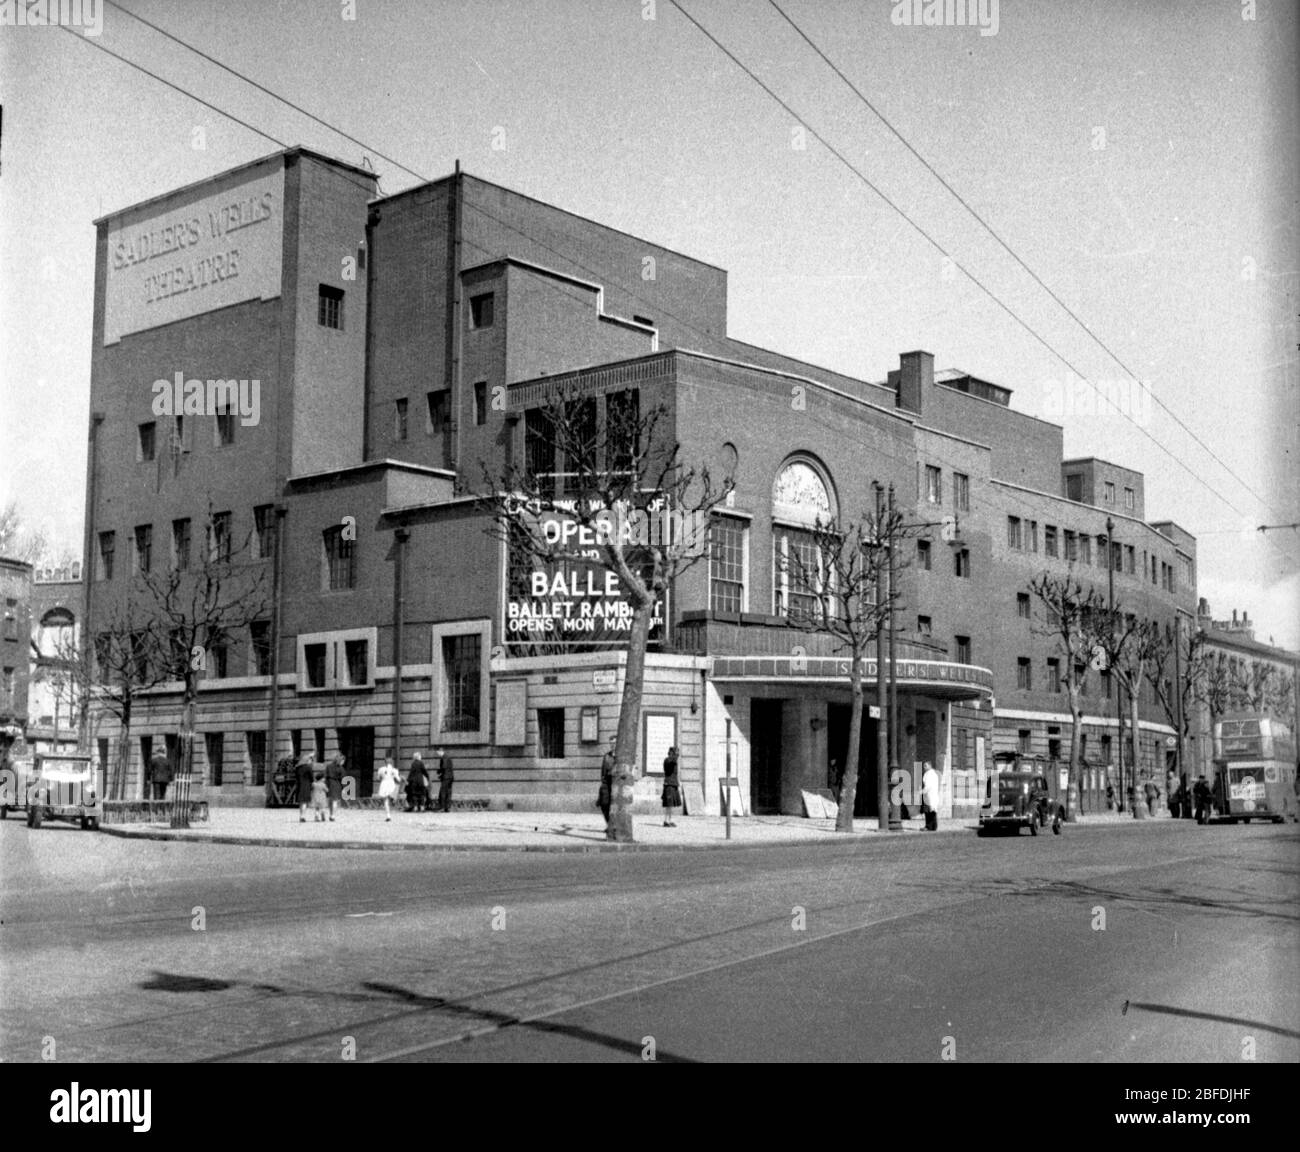 Vista del Teatro Sadler's Wells, Roseberry Avenue, Londres c1950 Foto de Tony Henshaw Archive Foto de stock